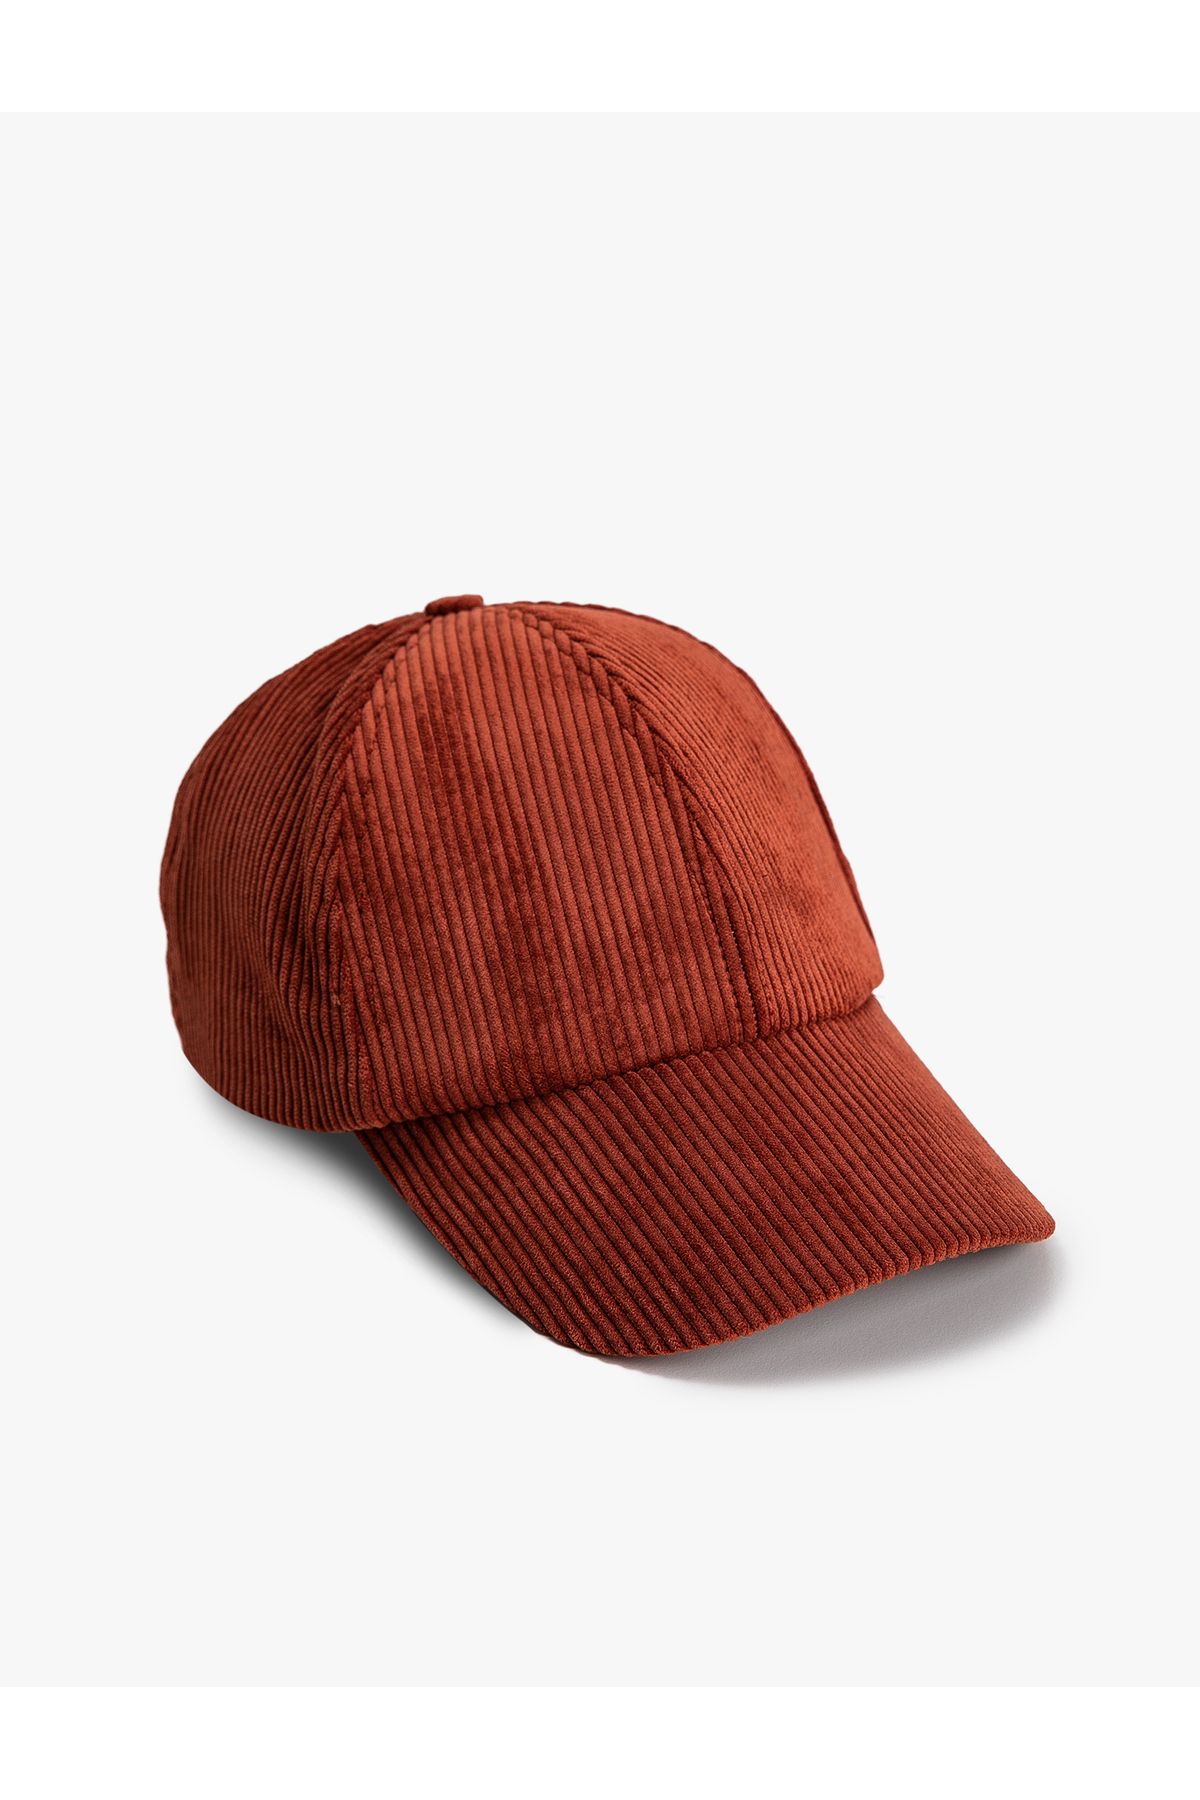 Koton Kışlık Şapka Kadife Cap